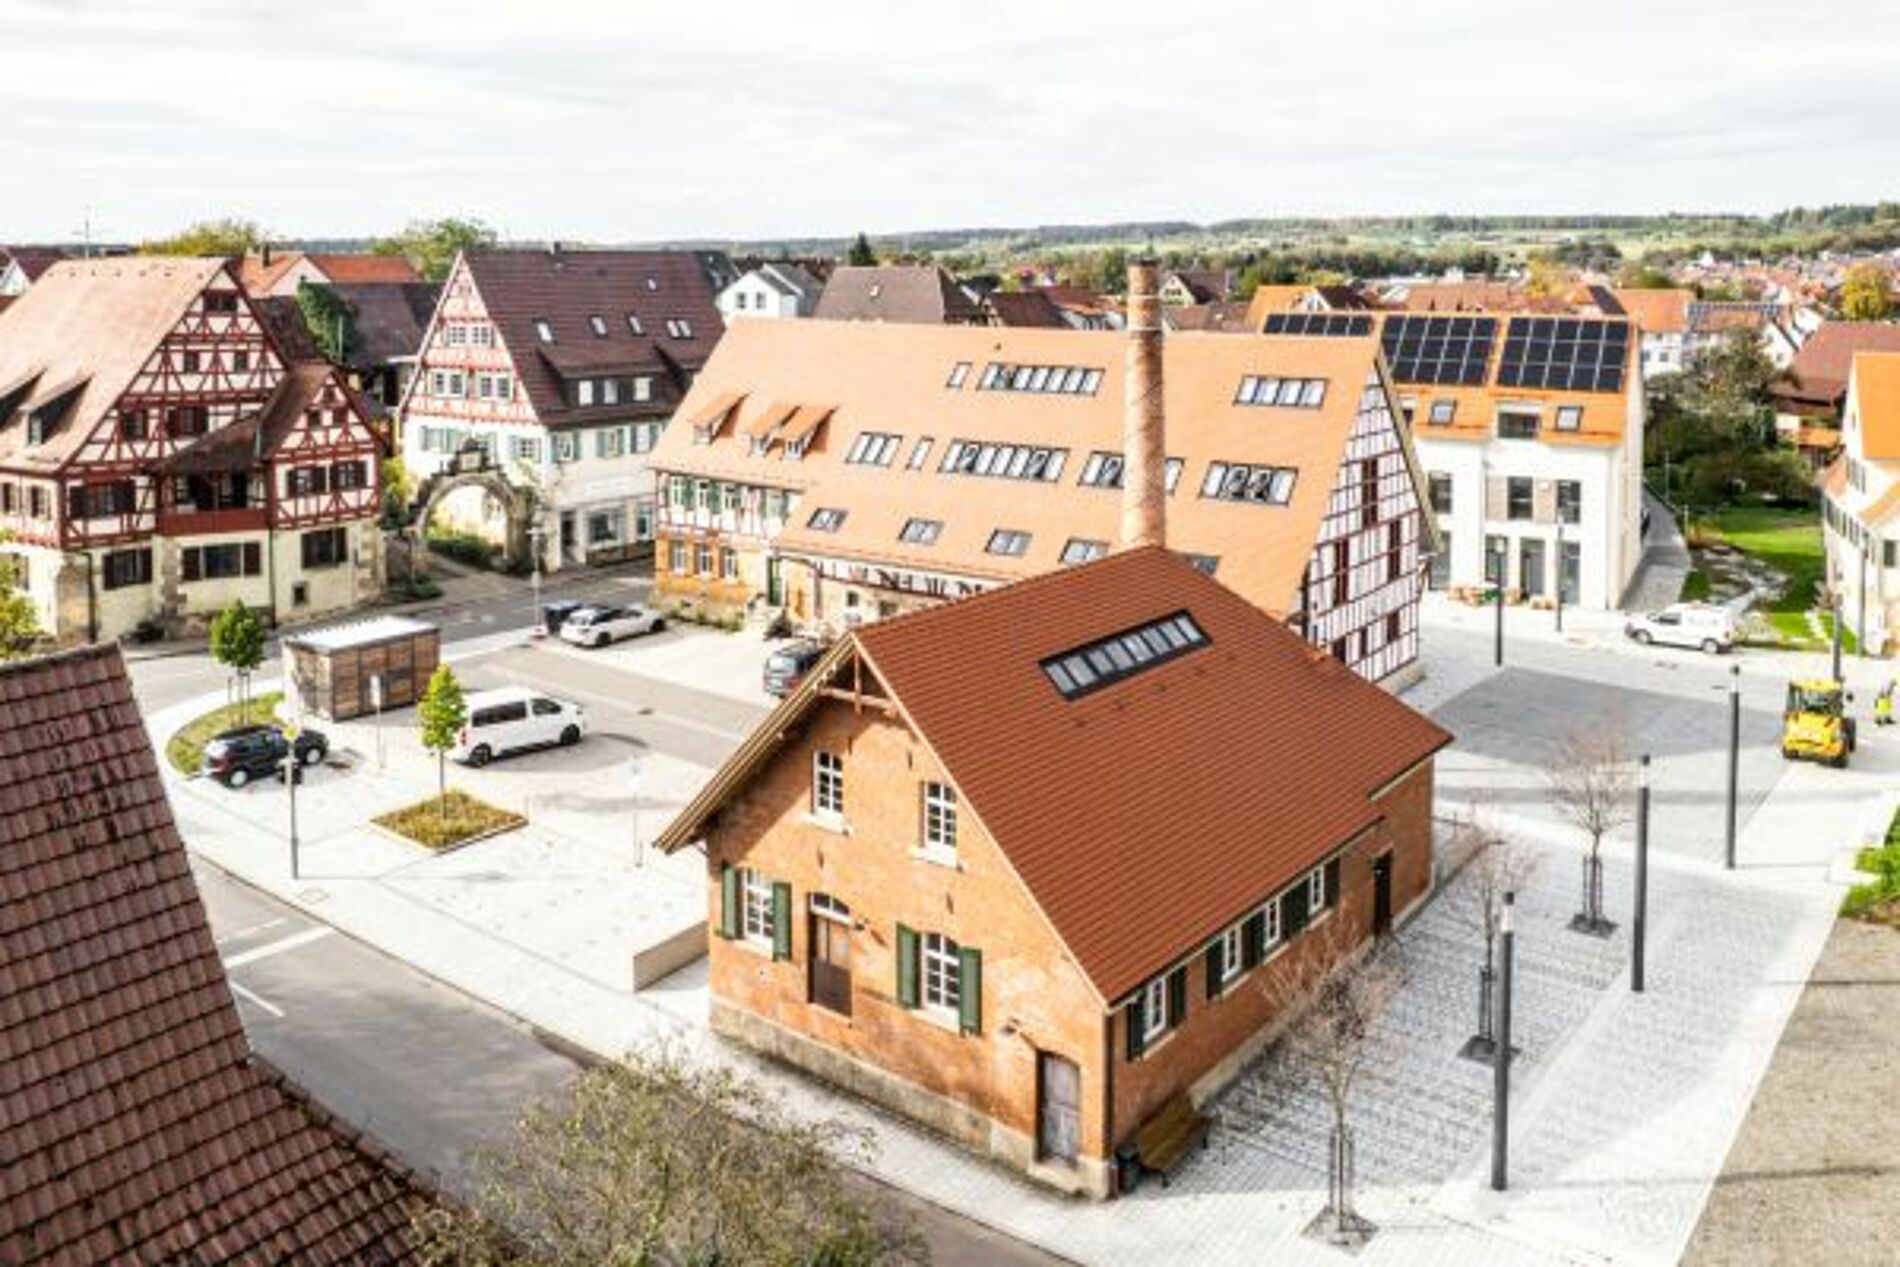 Die neue Ortsmitte in Walddorfhäslach mit der Neugestaltung des öffentlichen Verkehrsraums, drei denkmalgeschützten Gebäudekomplexen, neuen Wohnanlagen mit Photovoltaikanlagen auf den Dächern und einer Geothermieanlage.